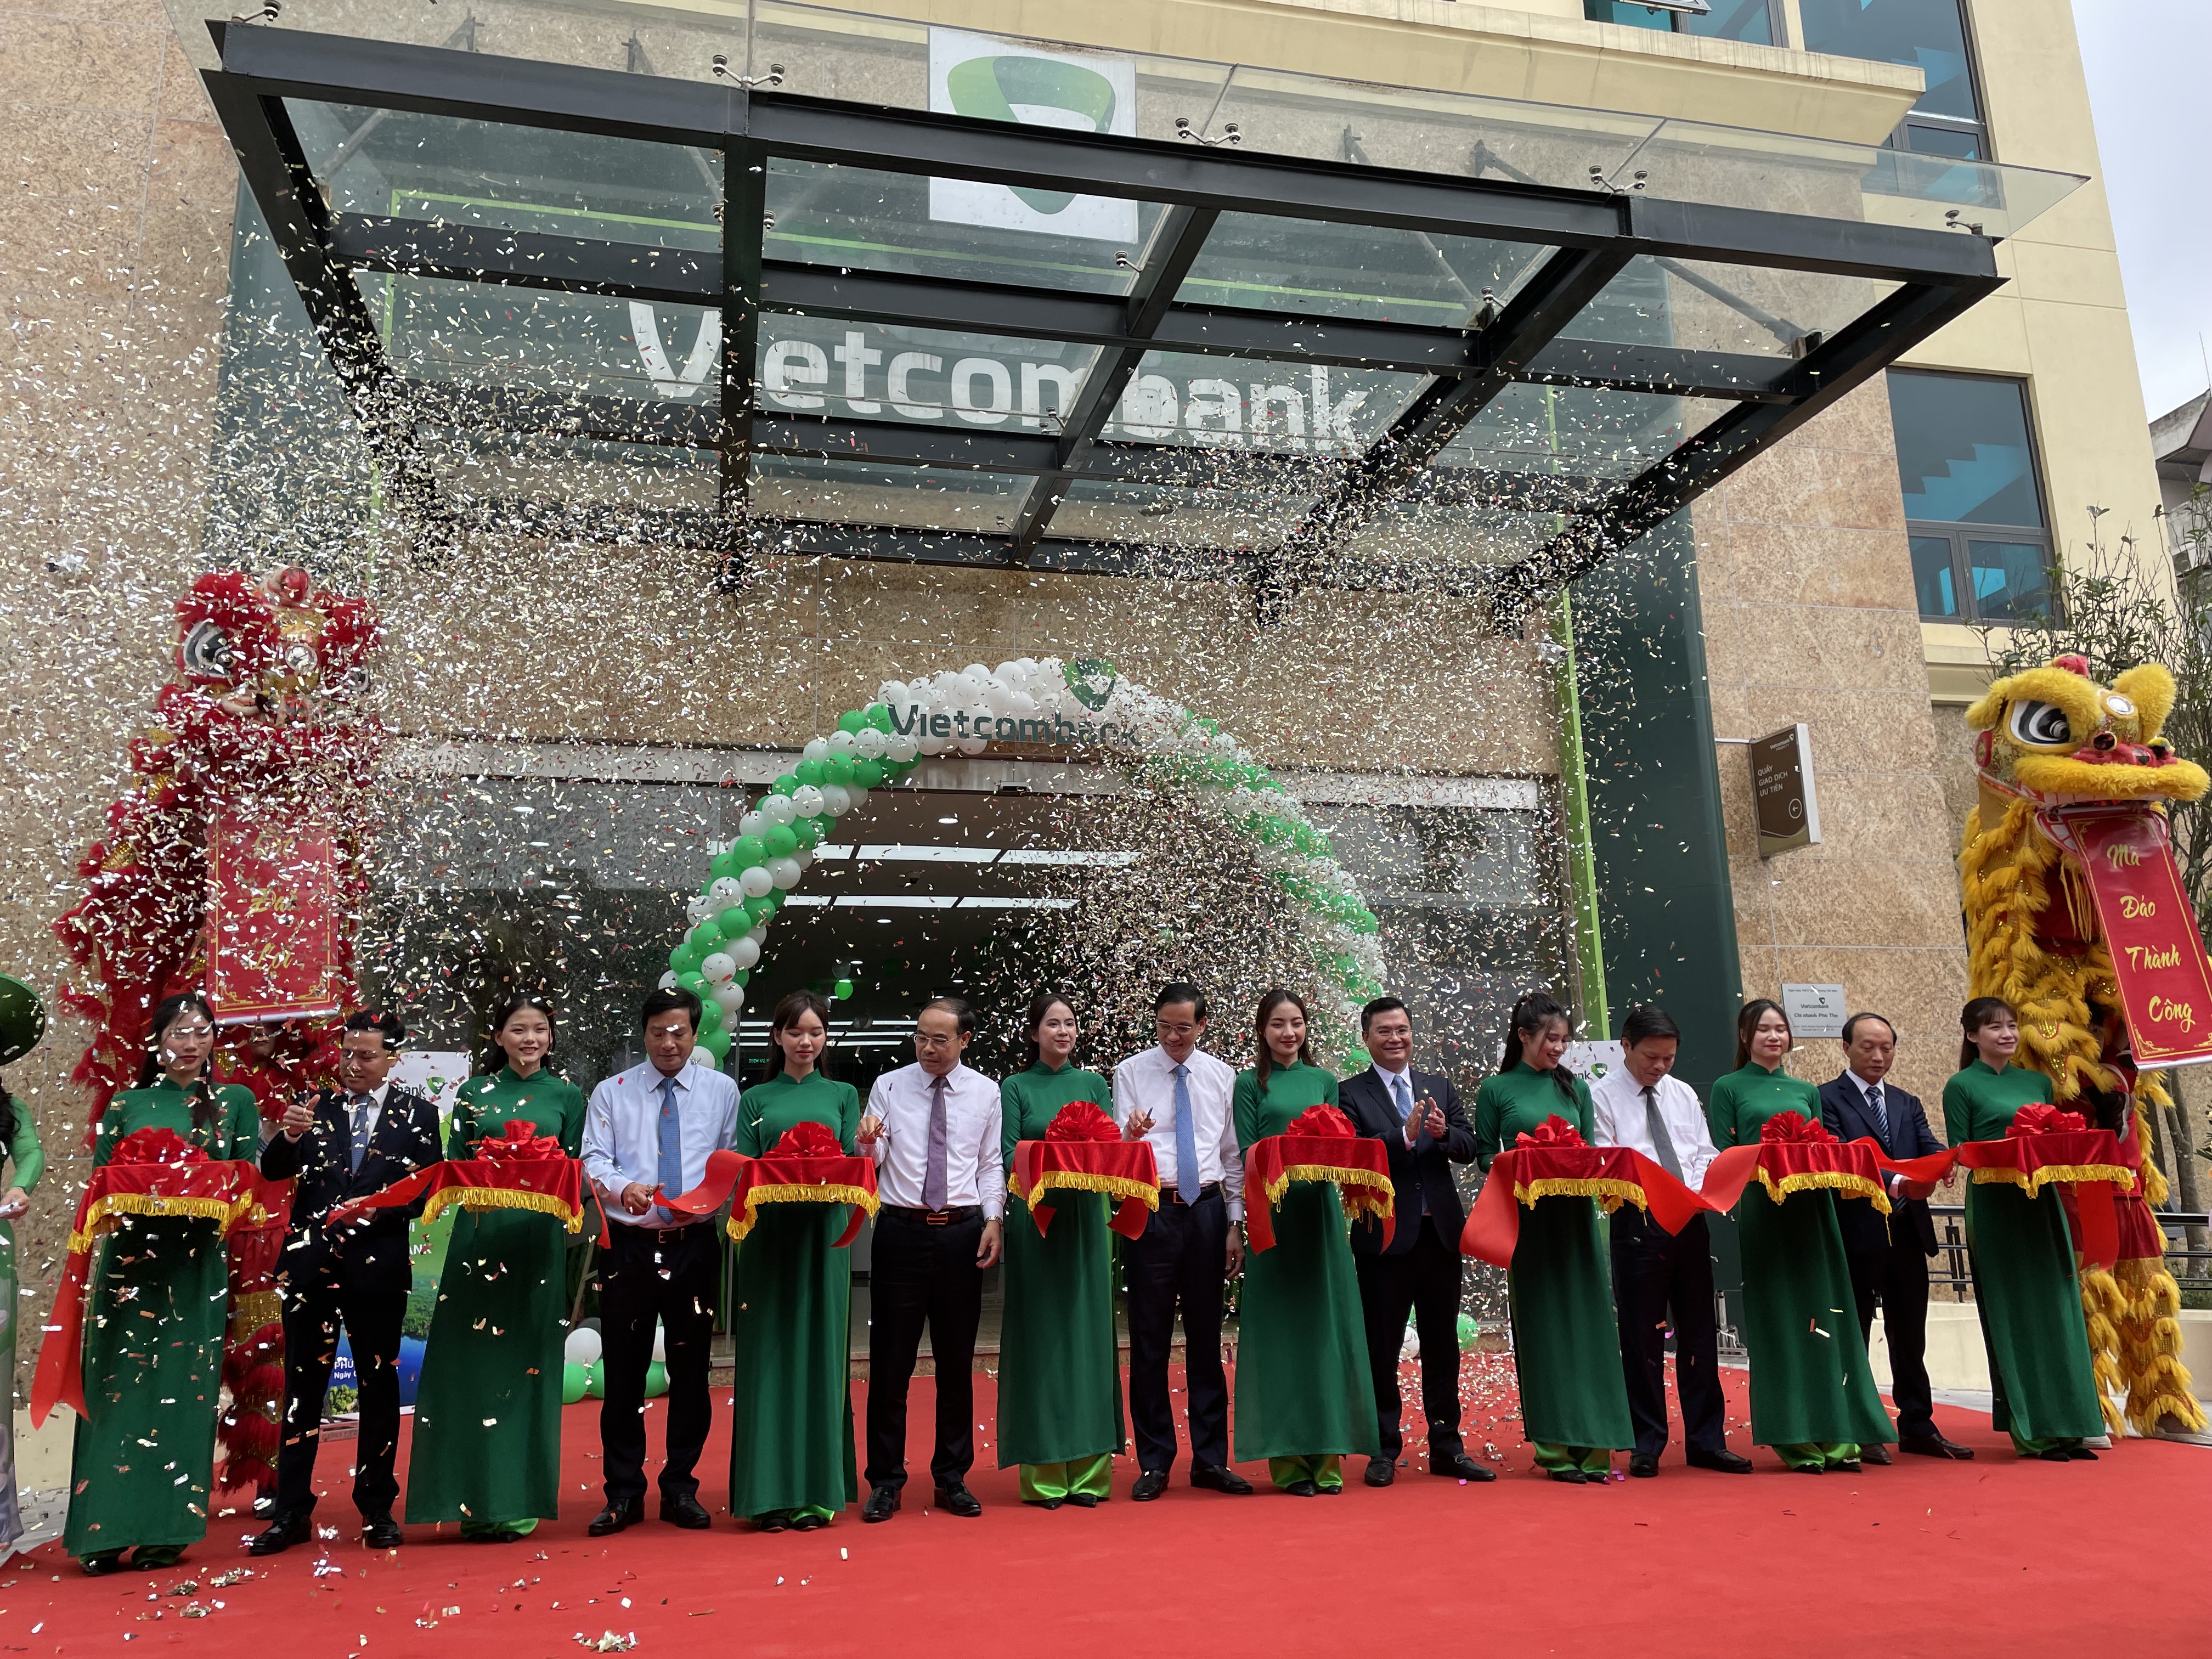 Kinh tế - Vietcombank Phú Thọ khánh thành trụ sở hoạt động mới